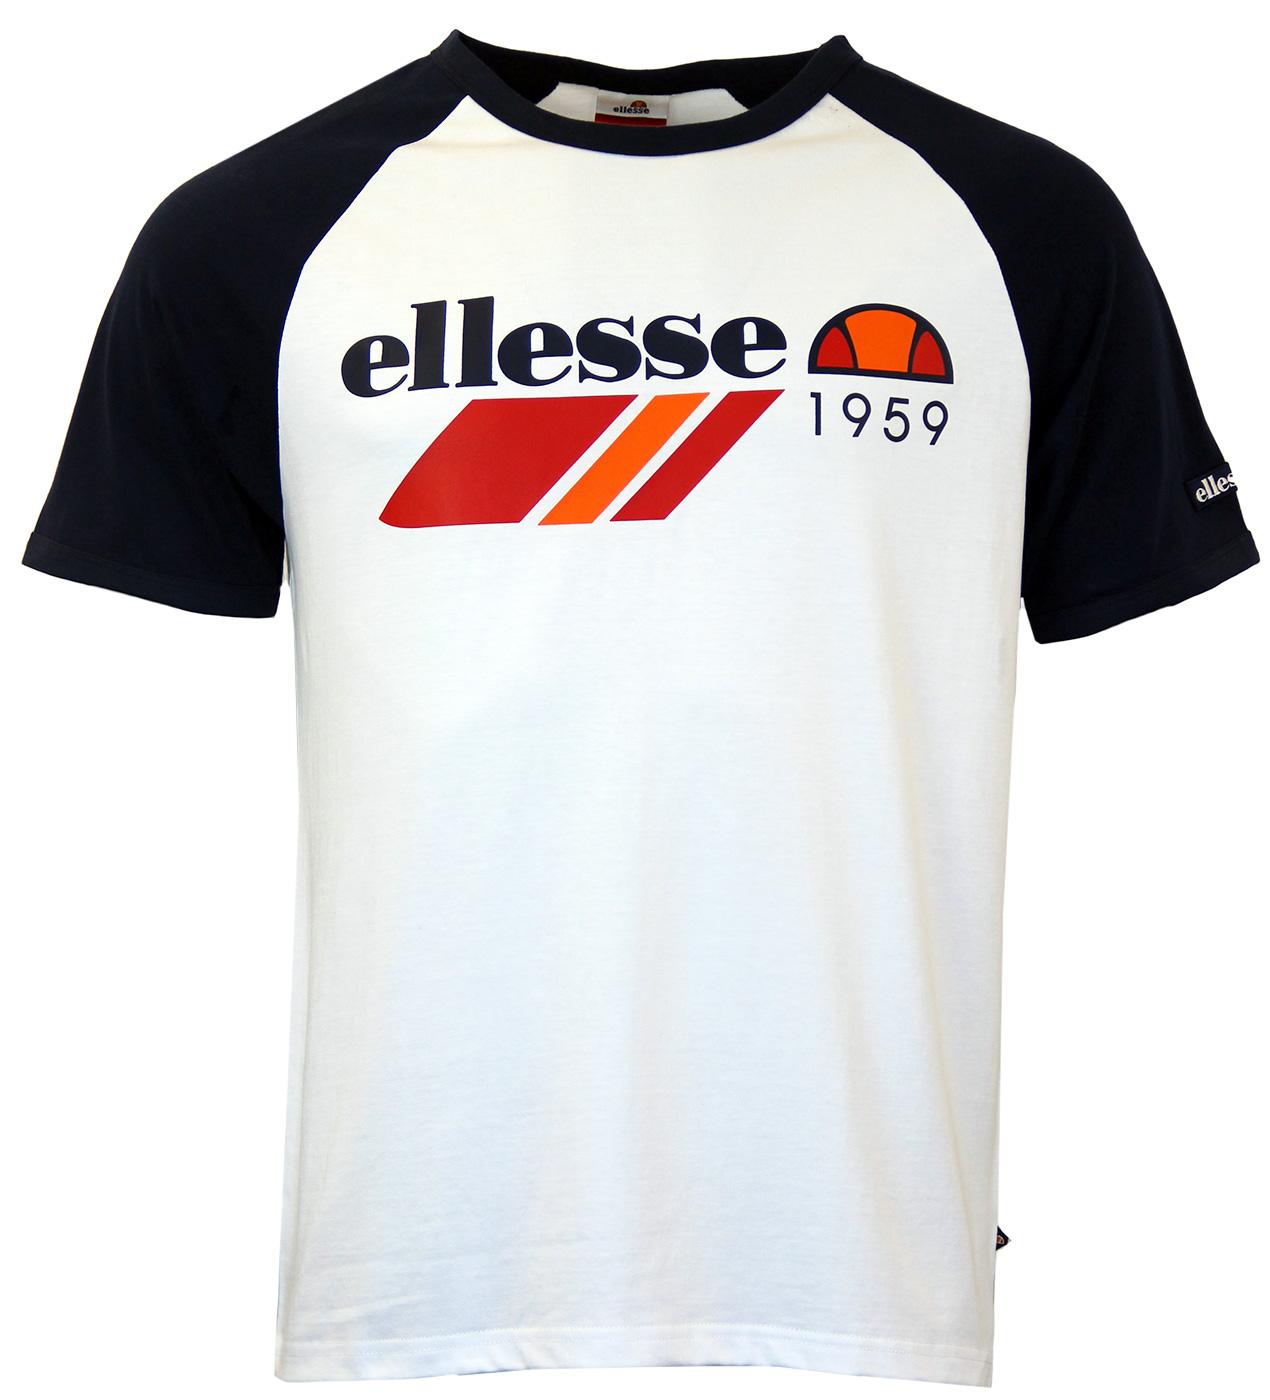 ELLESSE Dante Retro 70s Vintage T-Shirt 